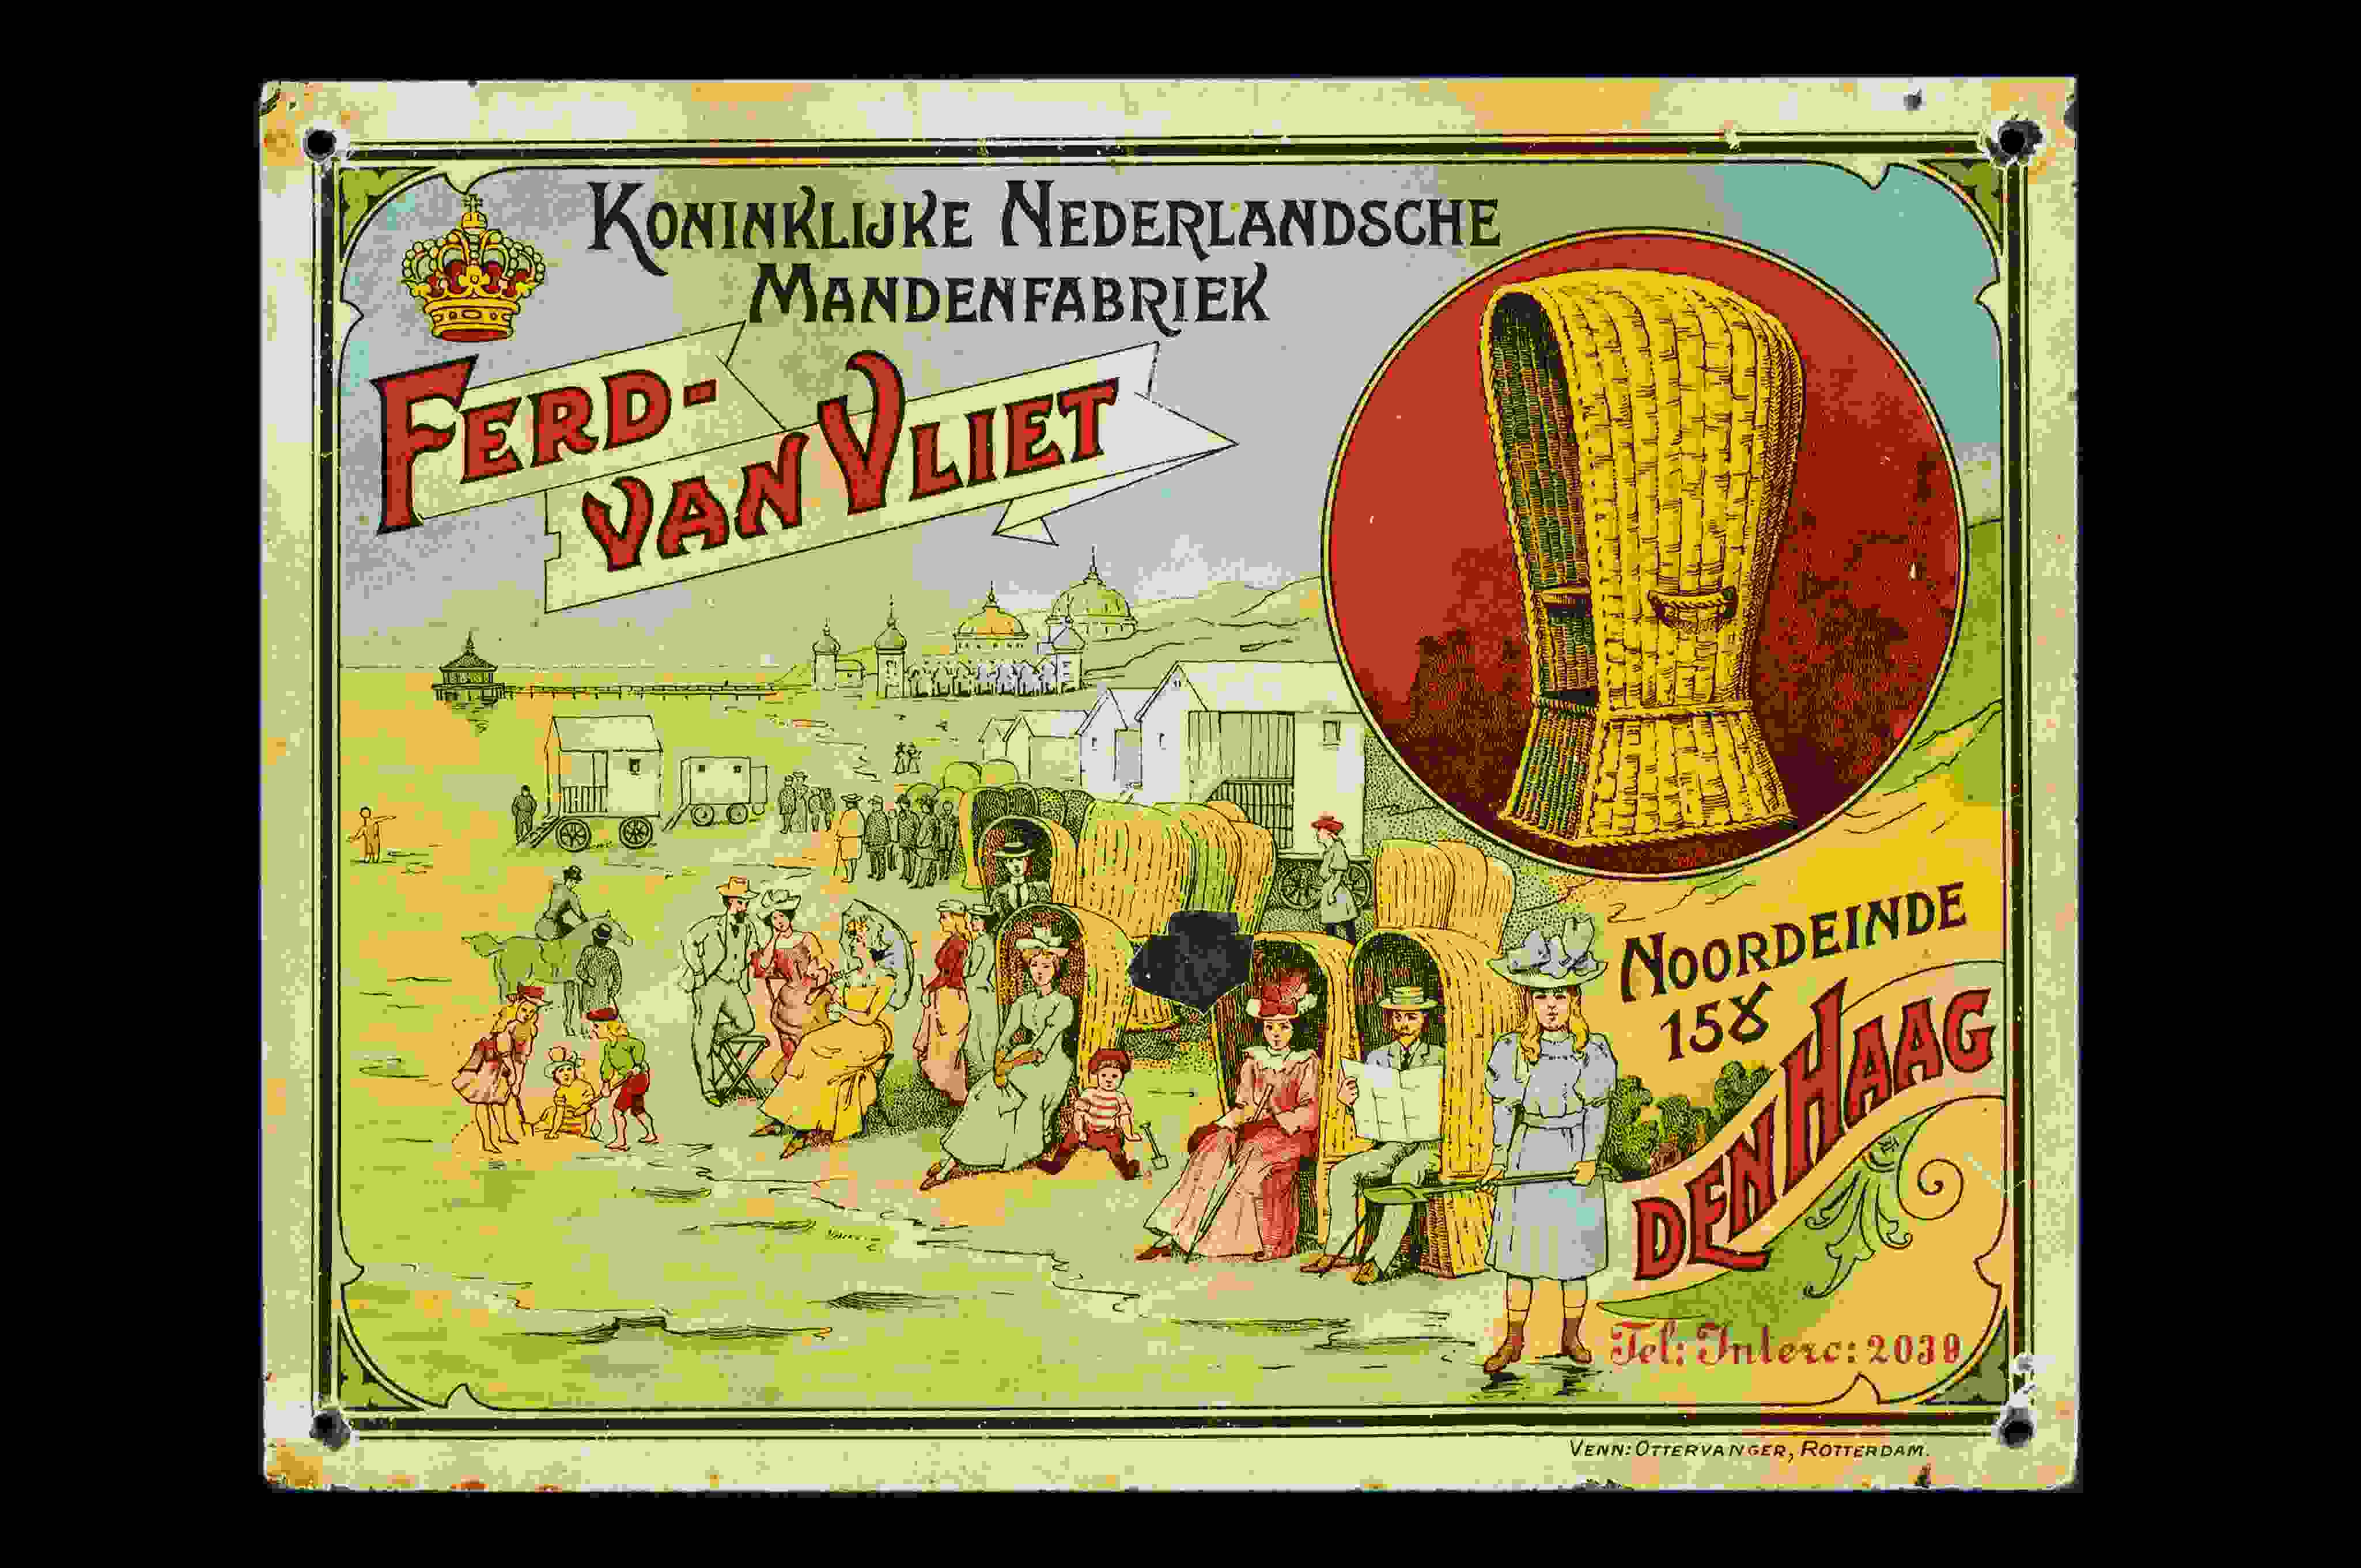 Ferd-Van Vliet Mandenfabriek 